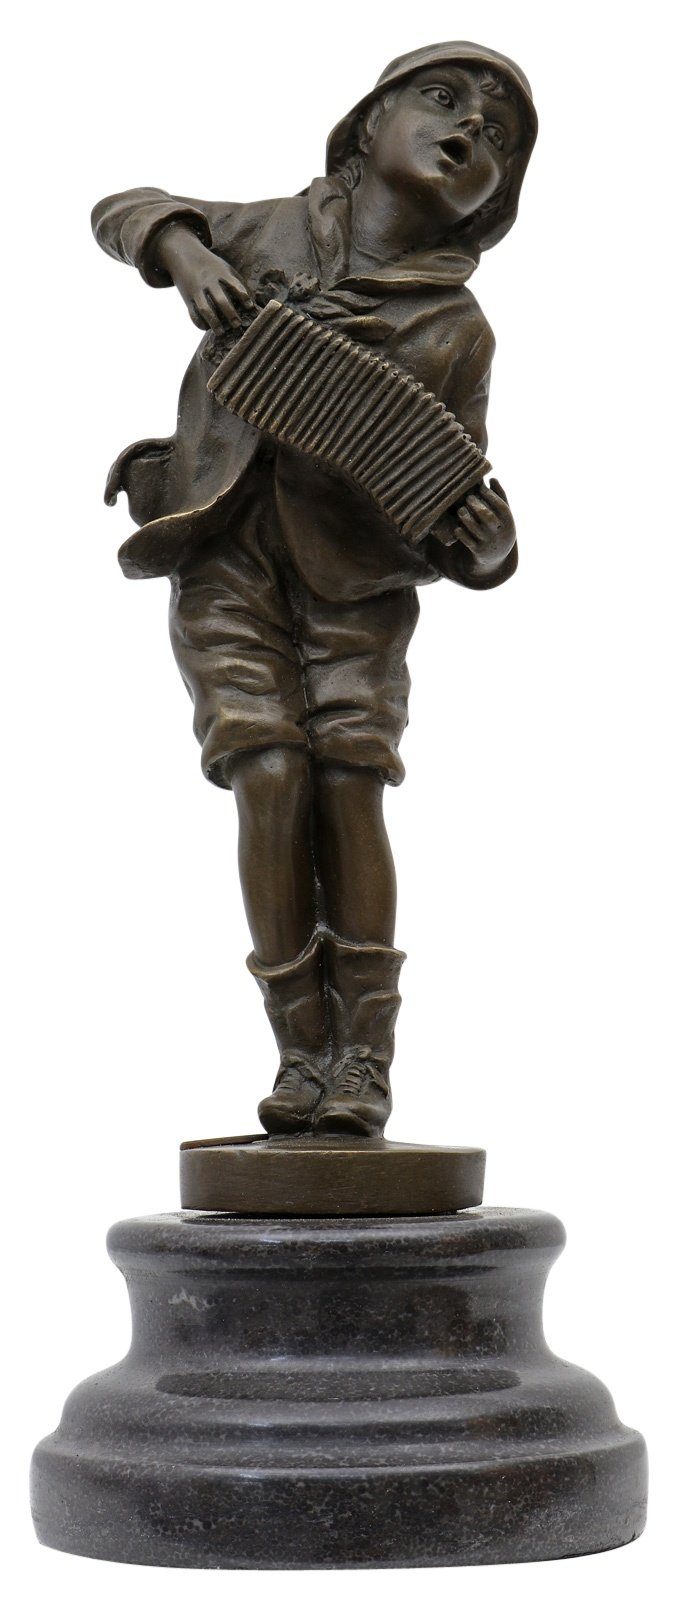 Aubaho Skulptur Bronzeskulptur Bronze Figur Ziehharmonika nach Chiparus Antik-Stil Rep